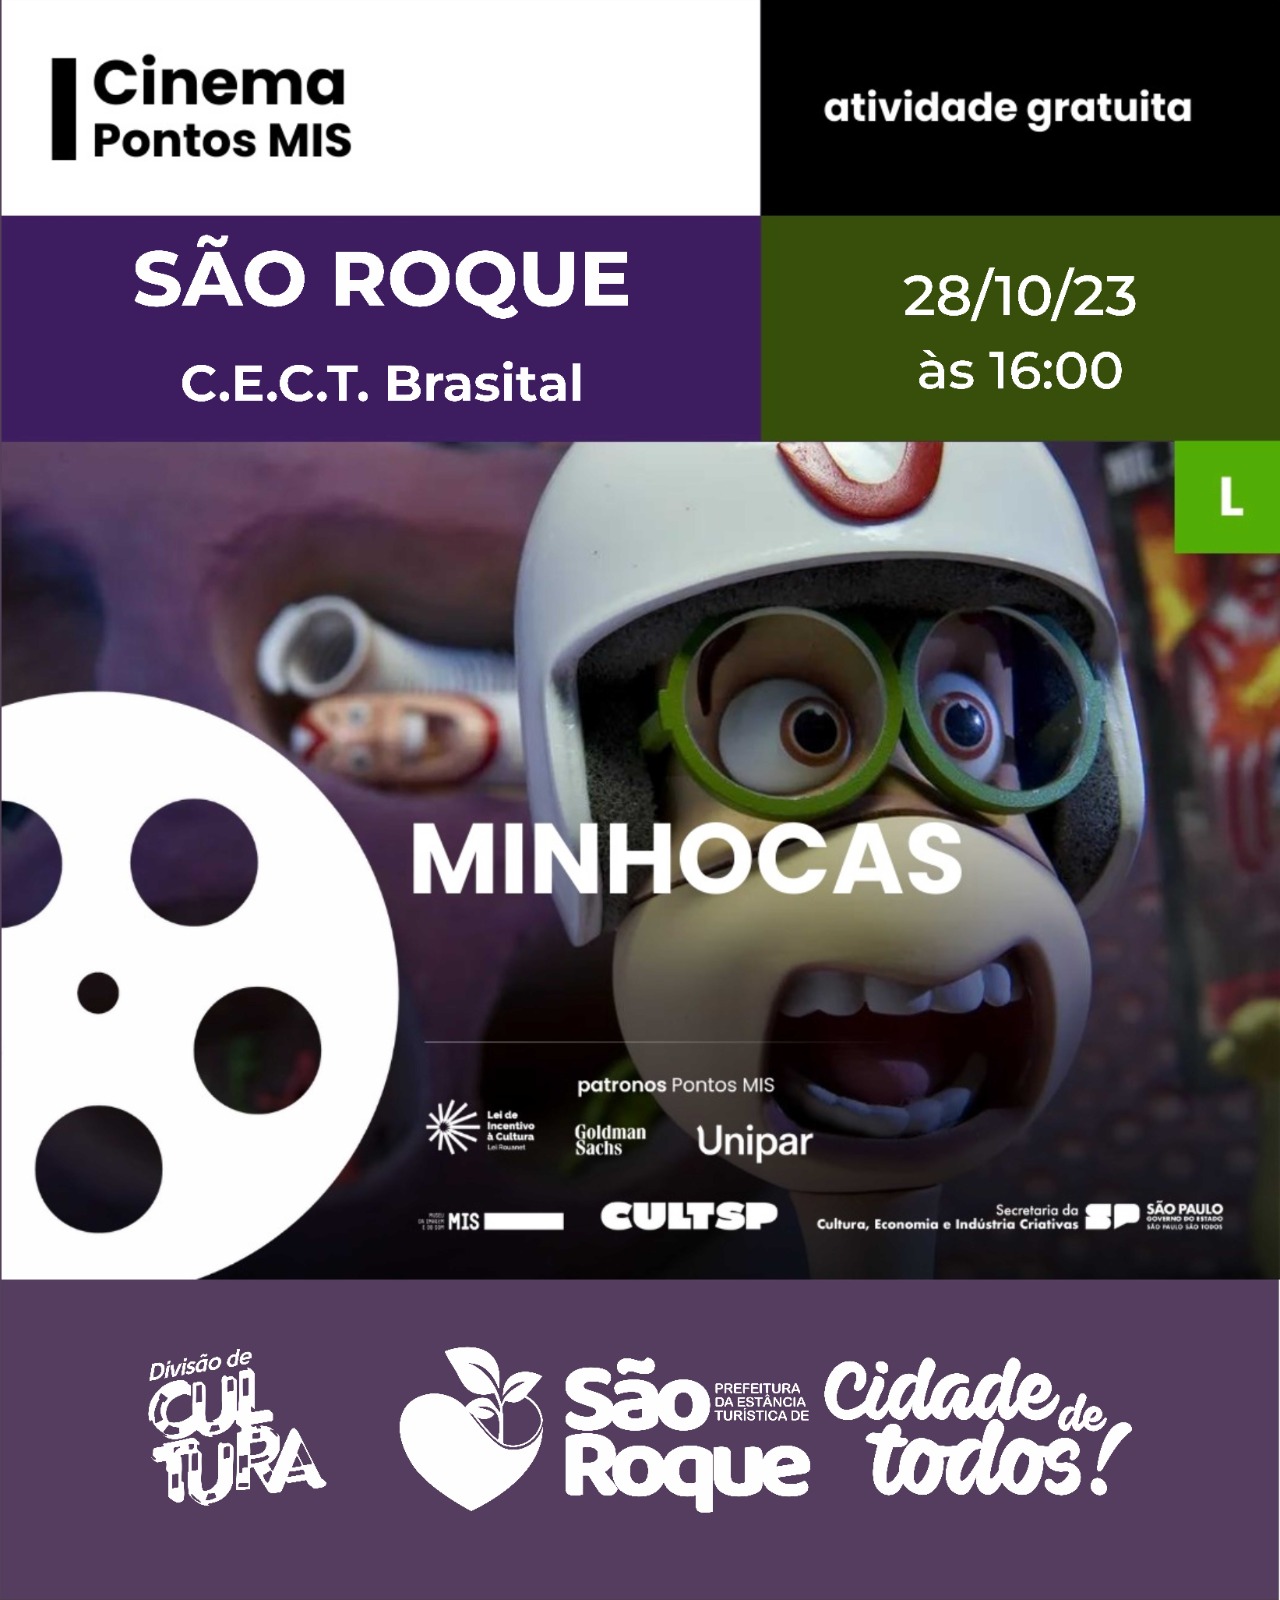 Minhocas, que é um filme de animação brasileiro em stop-motion,